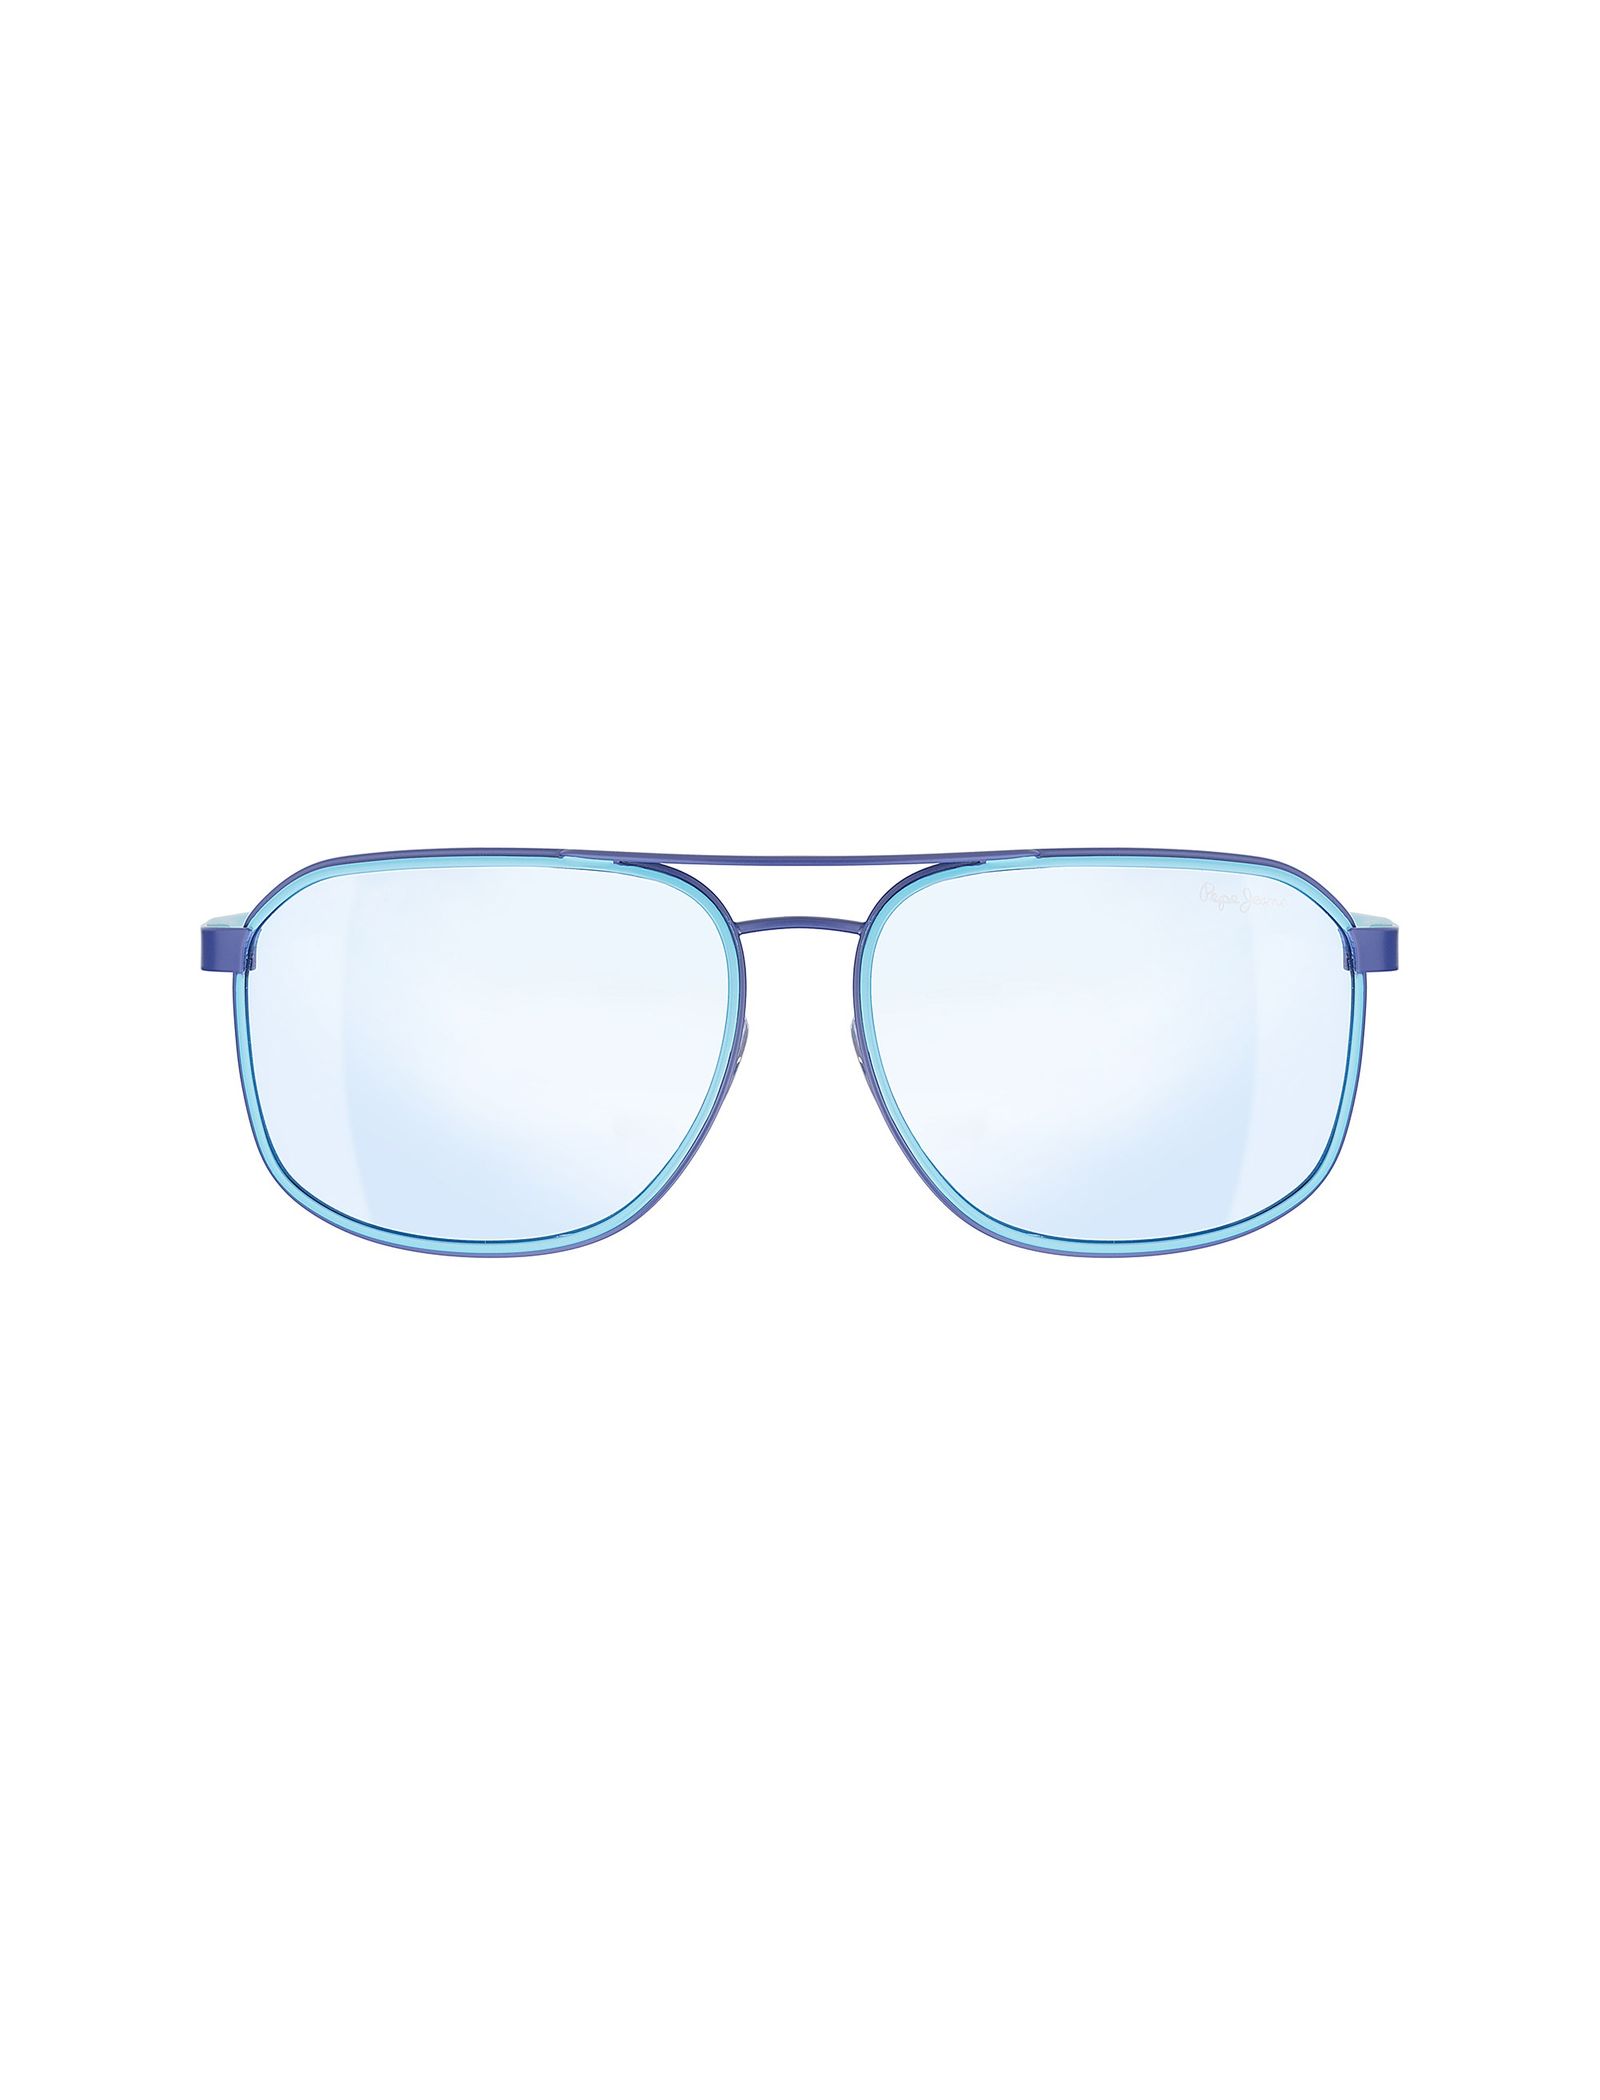 عینک آفتابی خلبانی زنانه - پپه جینز - آبي - 2